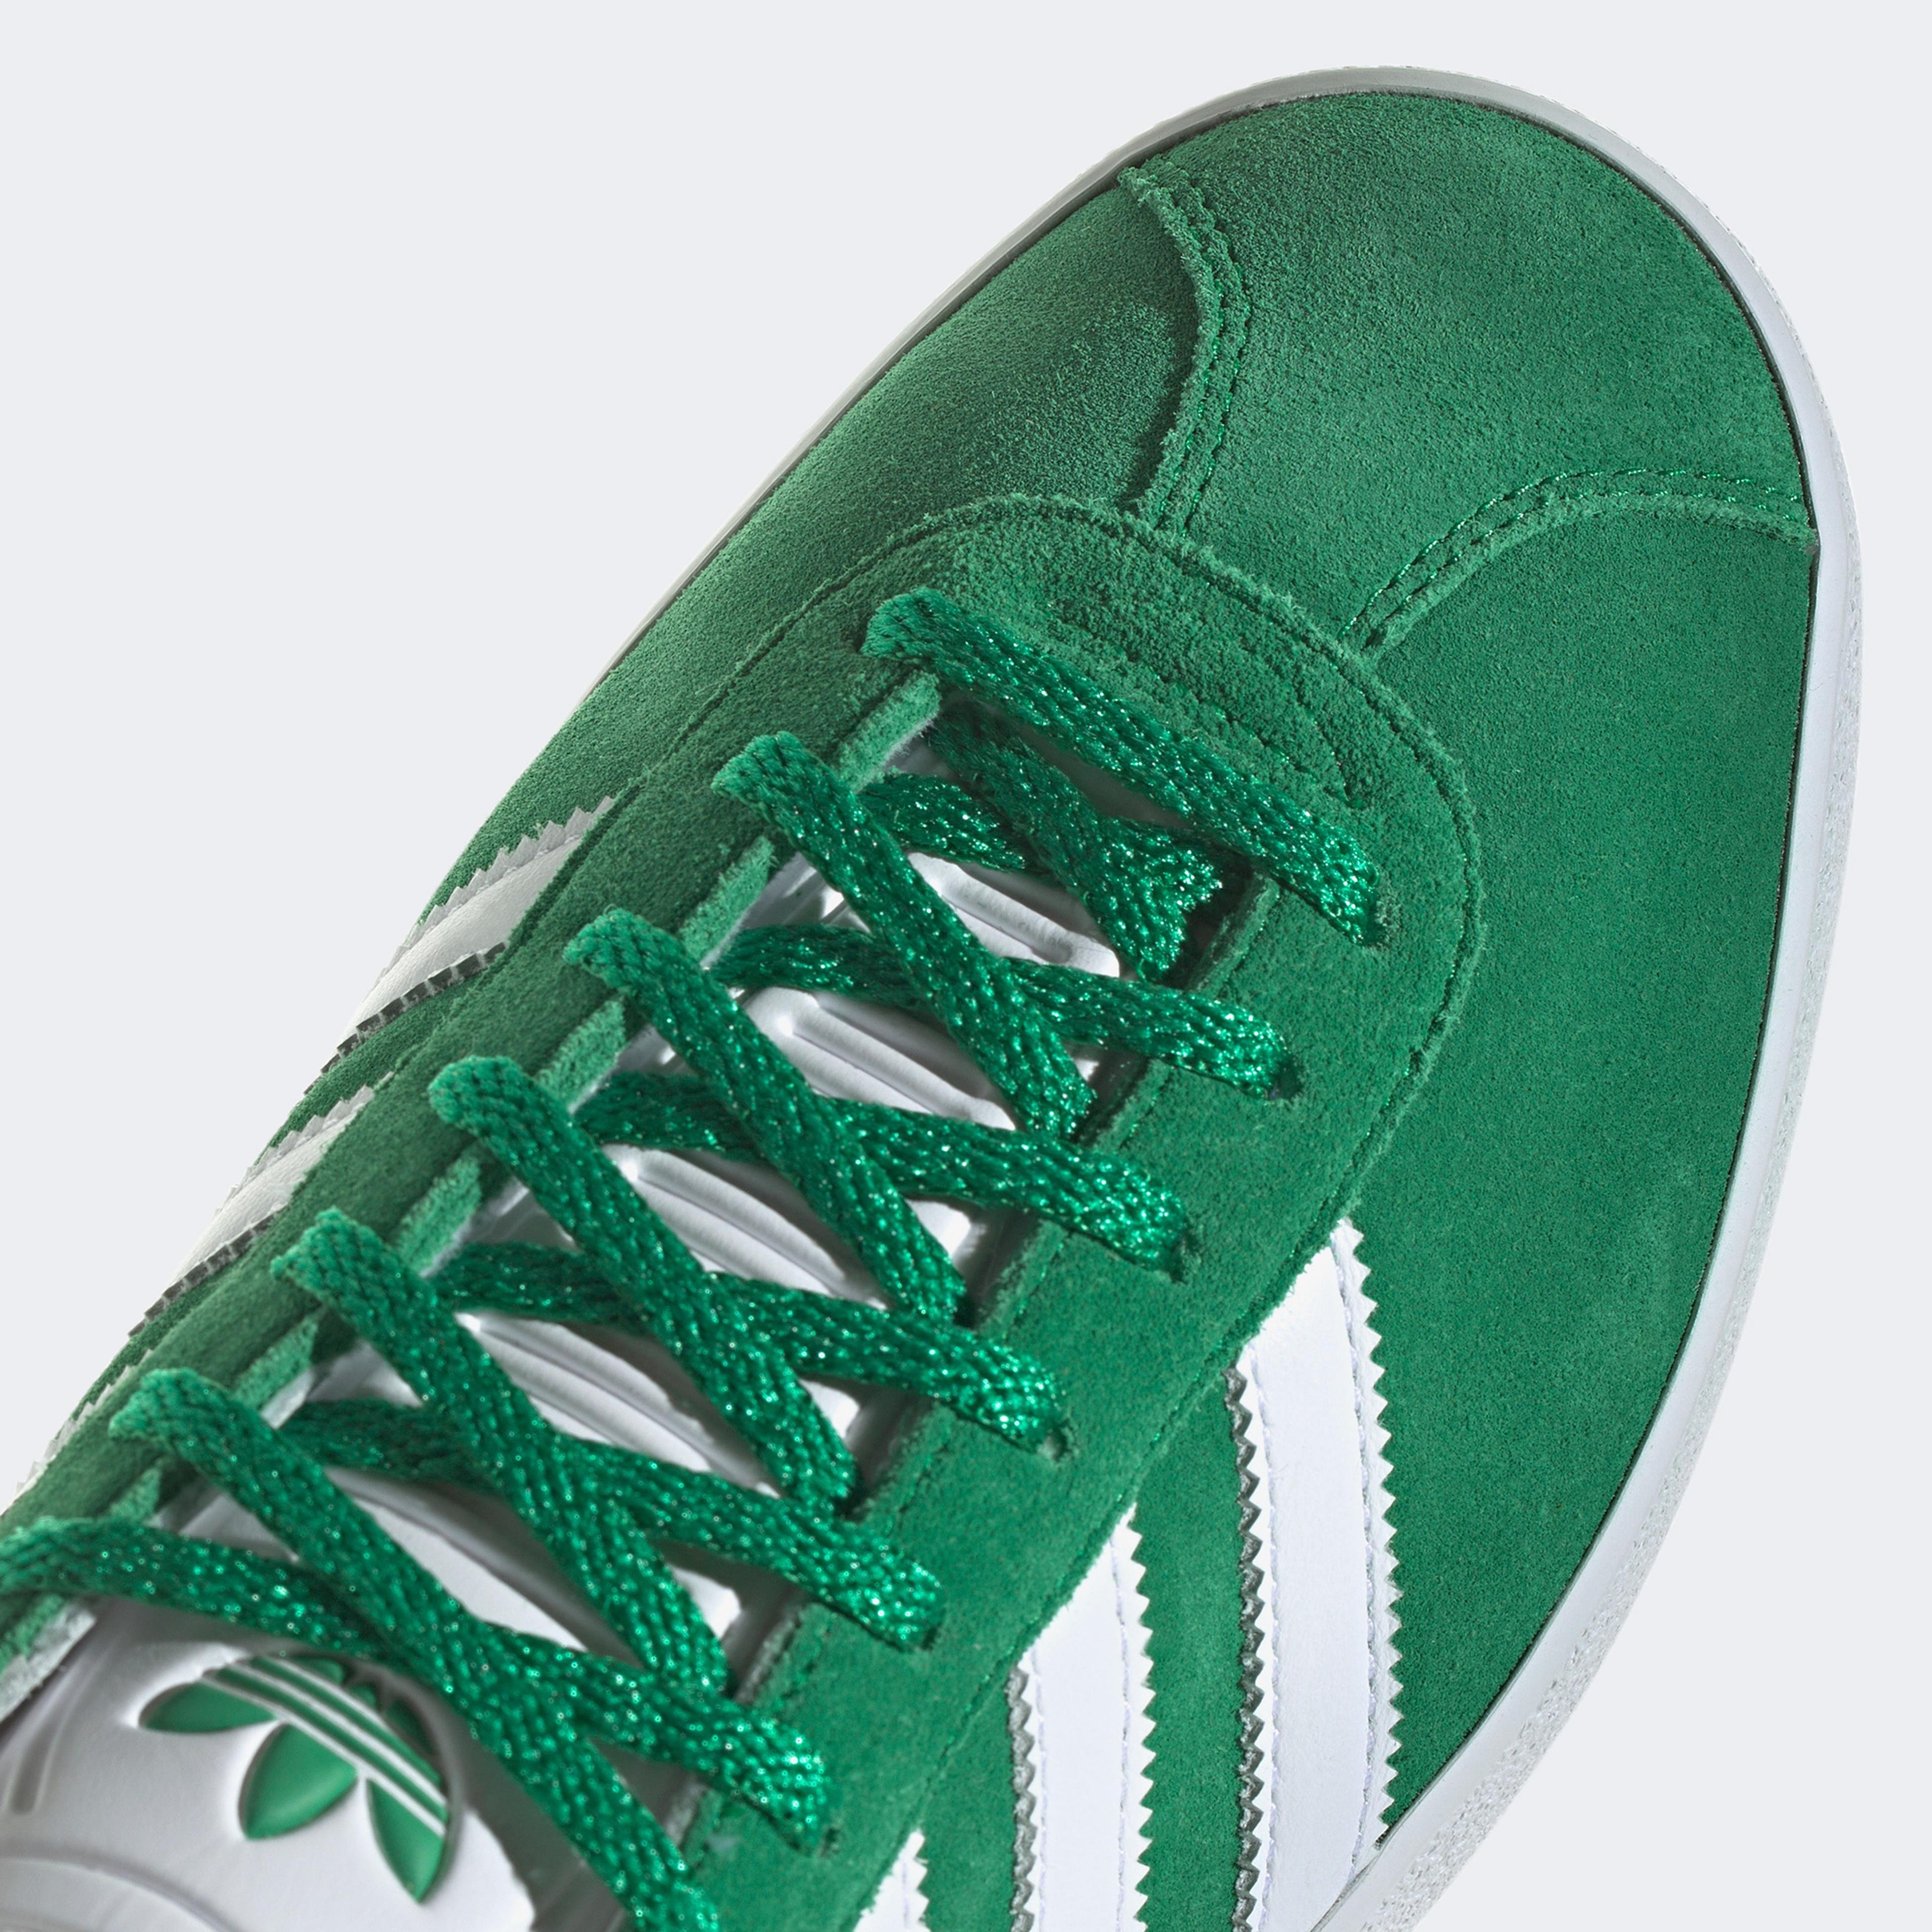 adidas Originals Gazelle 85  Unisex Yeşil Spor Ayakkabı